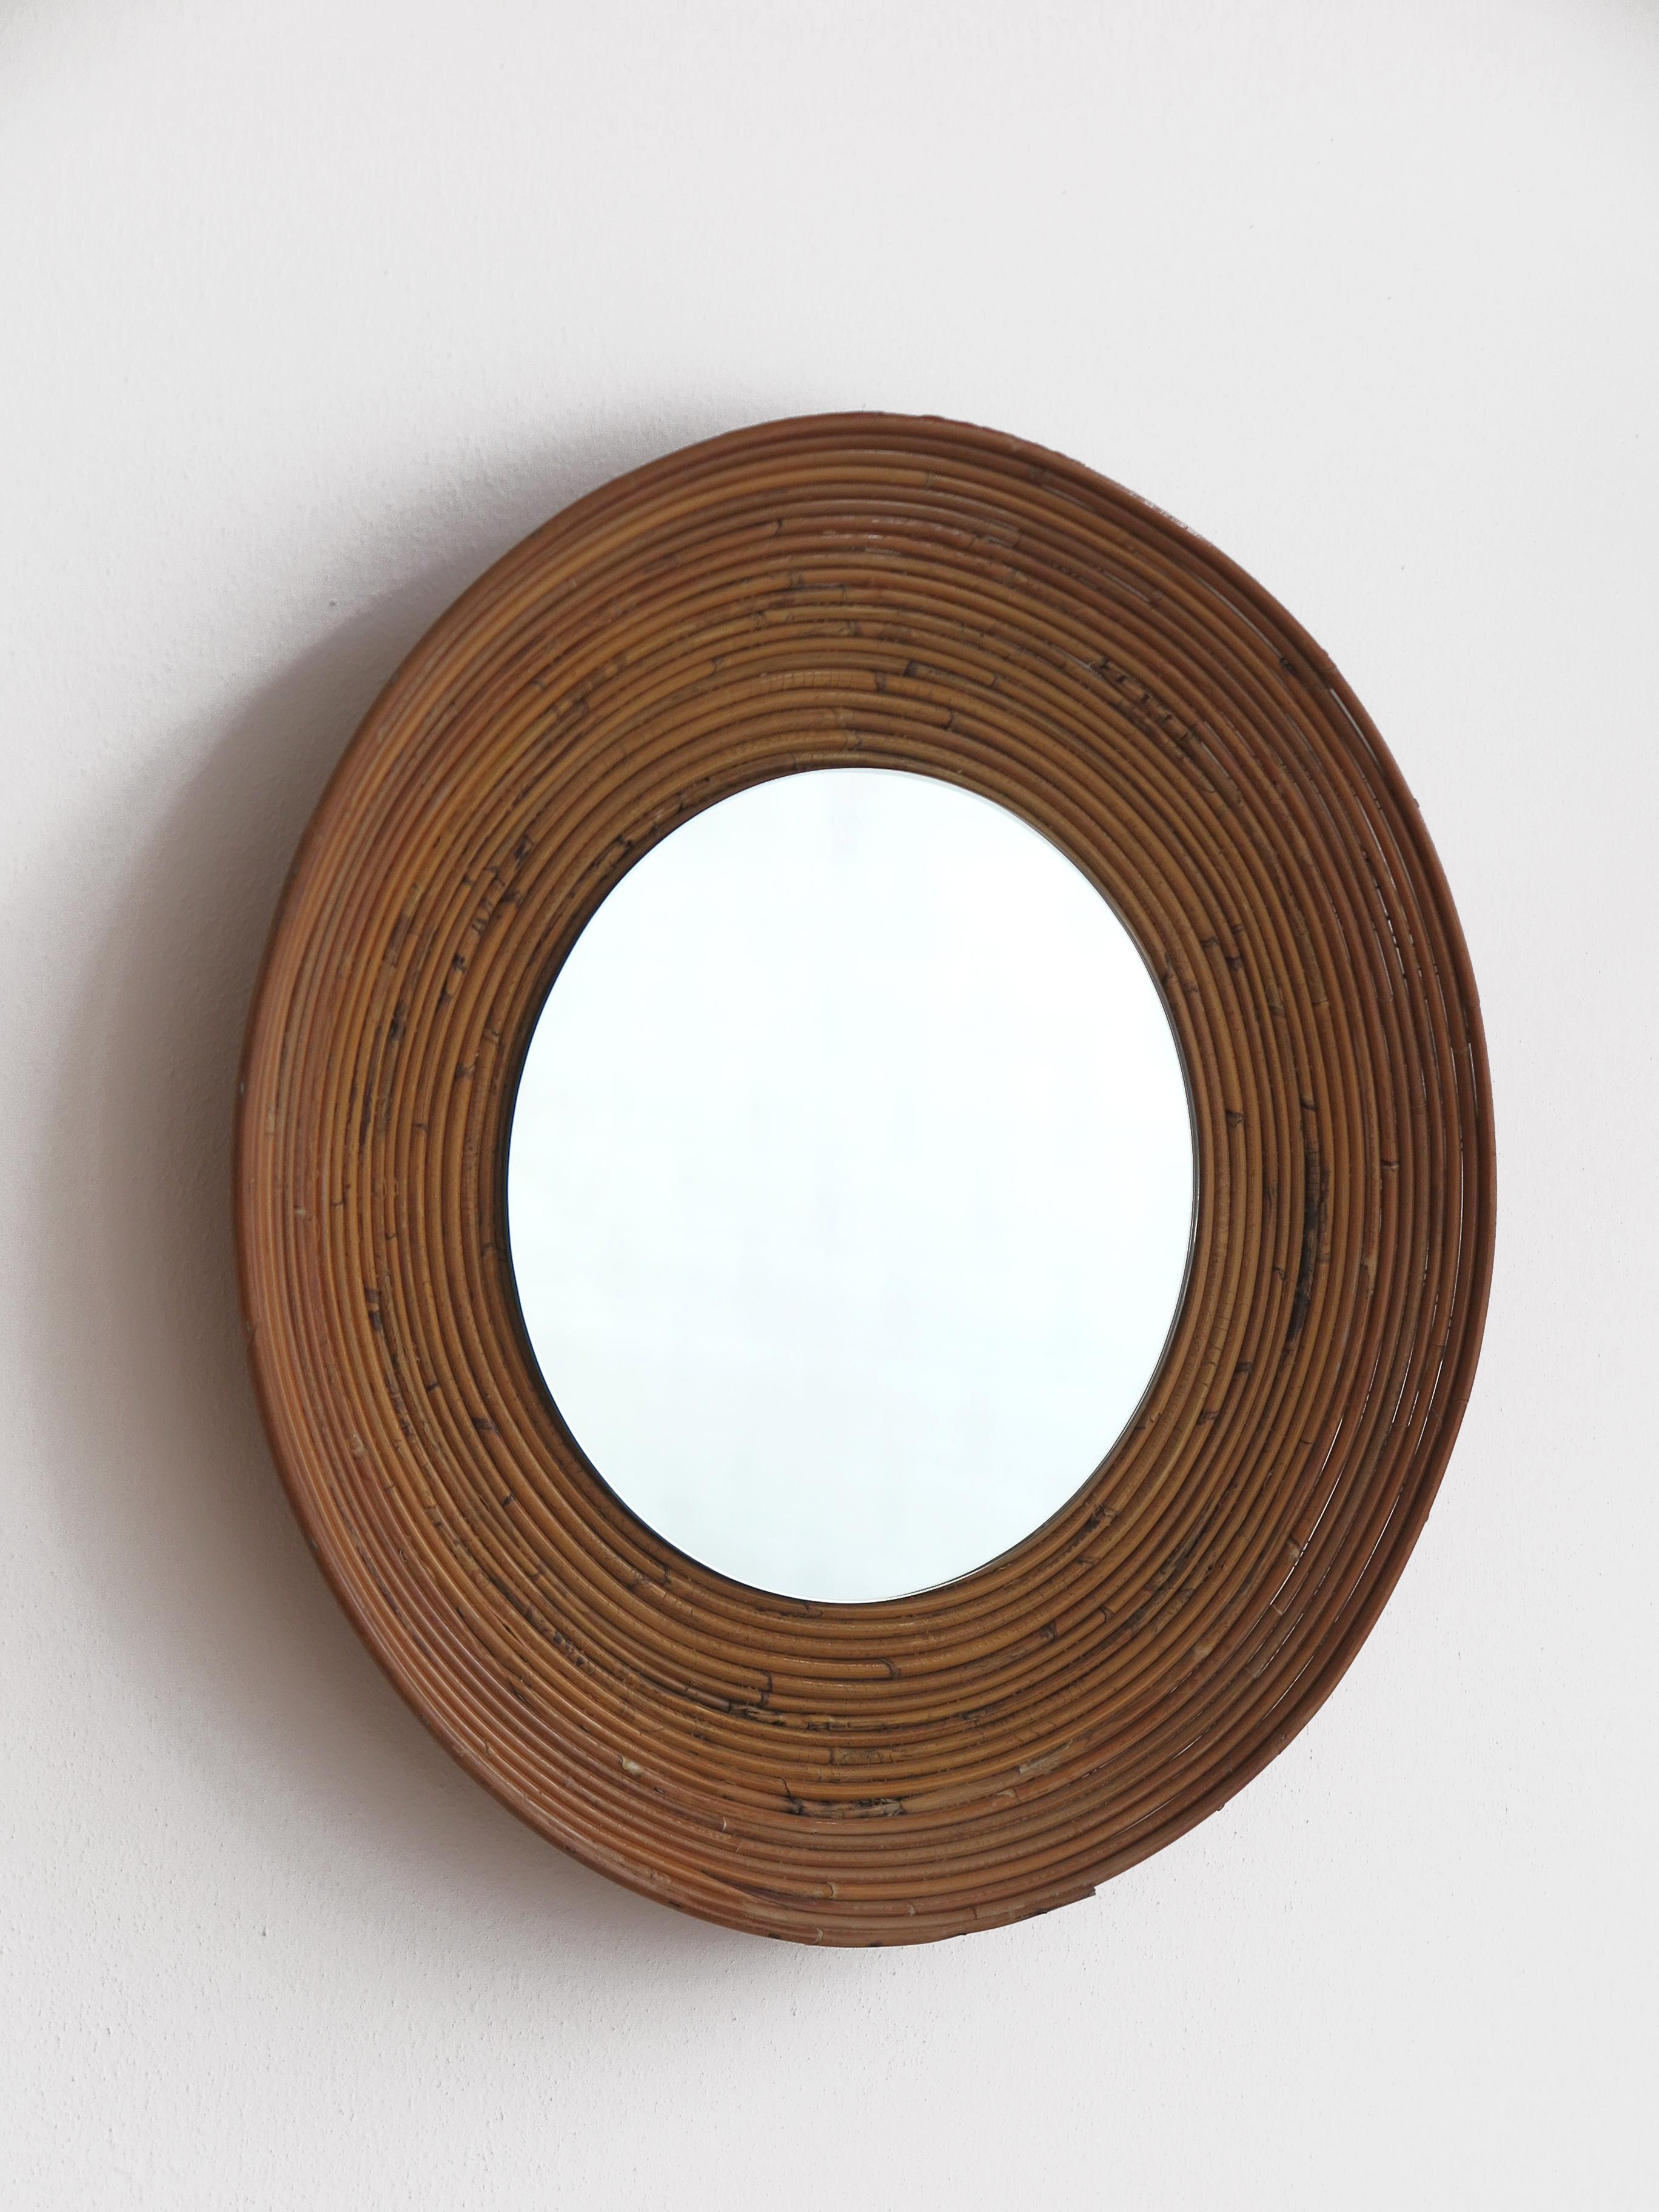 Italian Mid-Century Round Rattan Bamboo Wall Mirror, 1960s In Good Condition For Sale In Reggio Emilia, IT